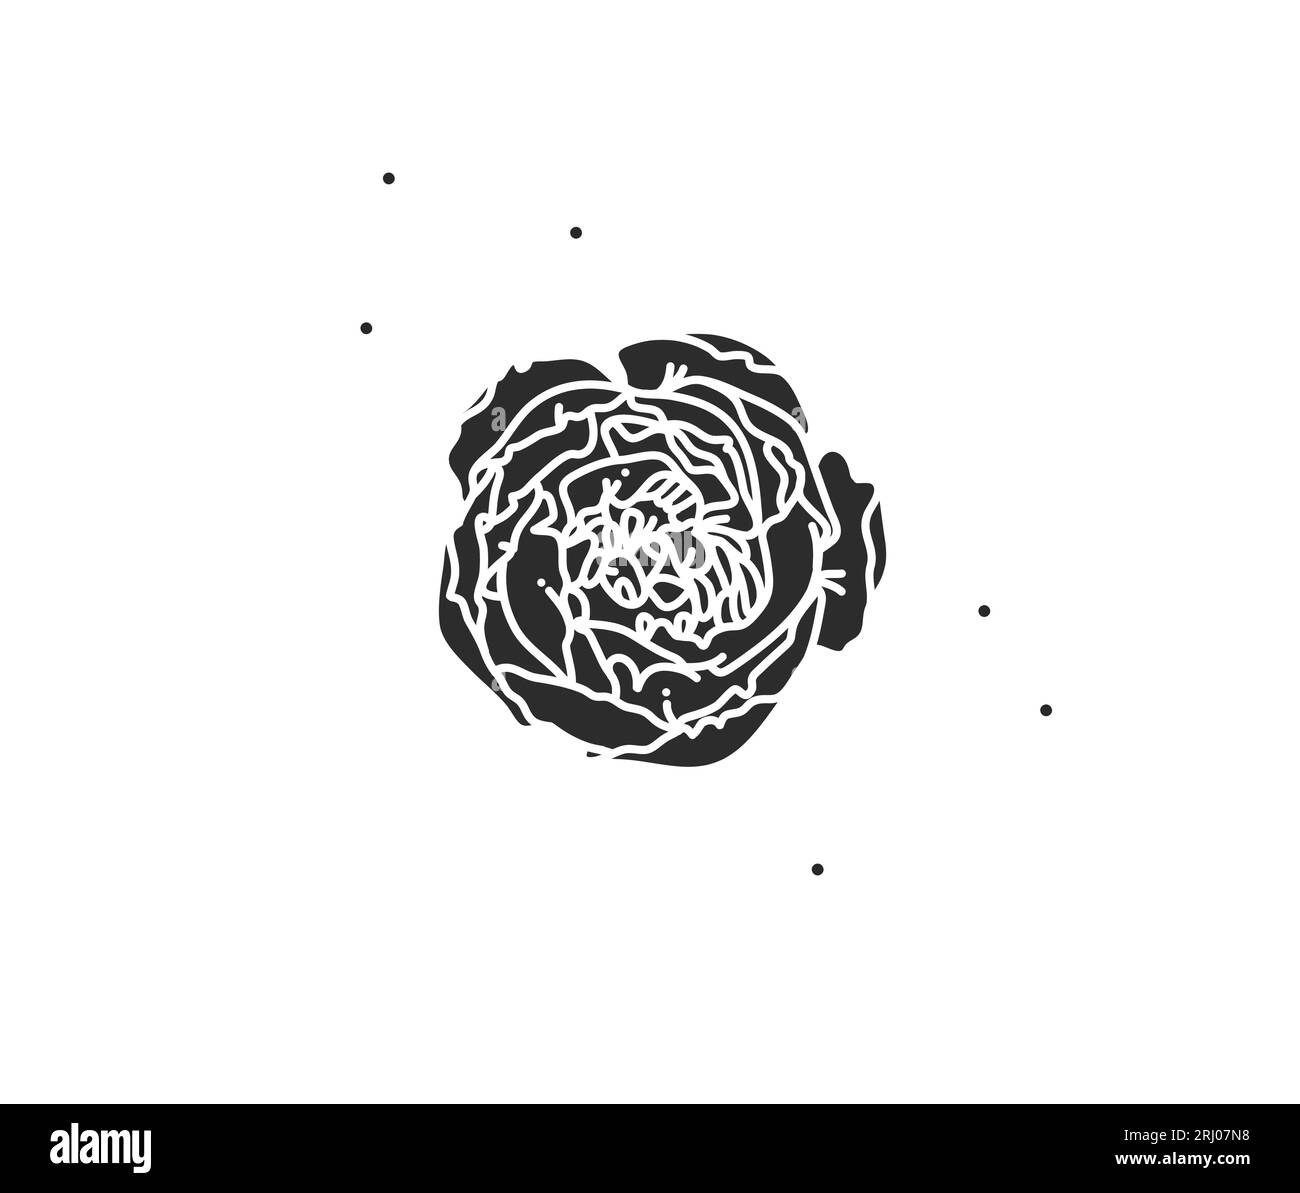 Illustration graphique à plat abstraite dessinée à la main avec élément de logo d'art de fleur de ligne, silhouette noire de pivoine, isolé sur fond blanc Illustration de Vecteur